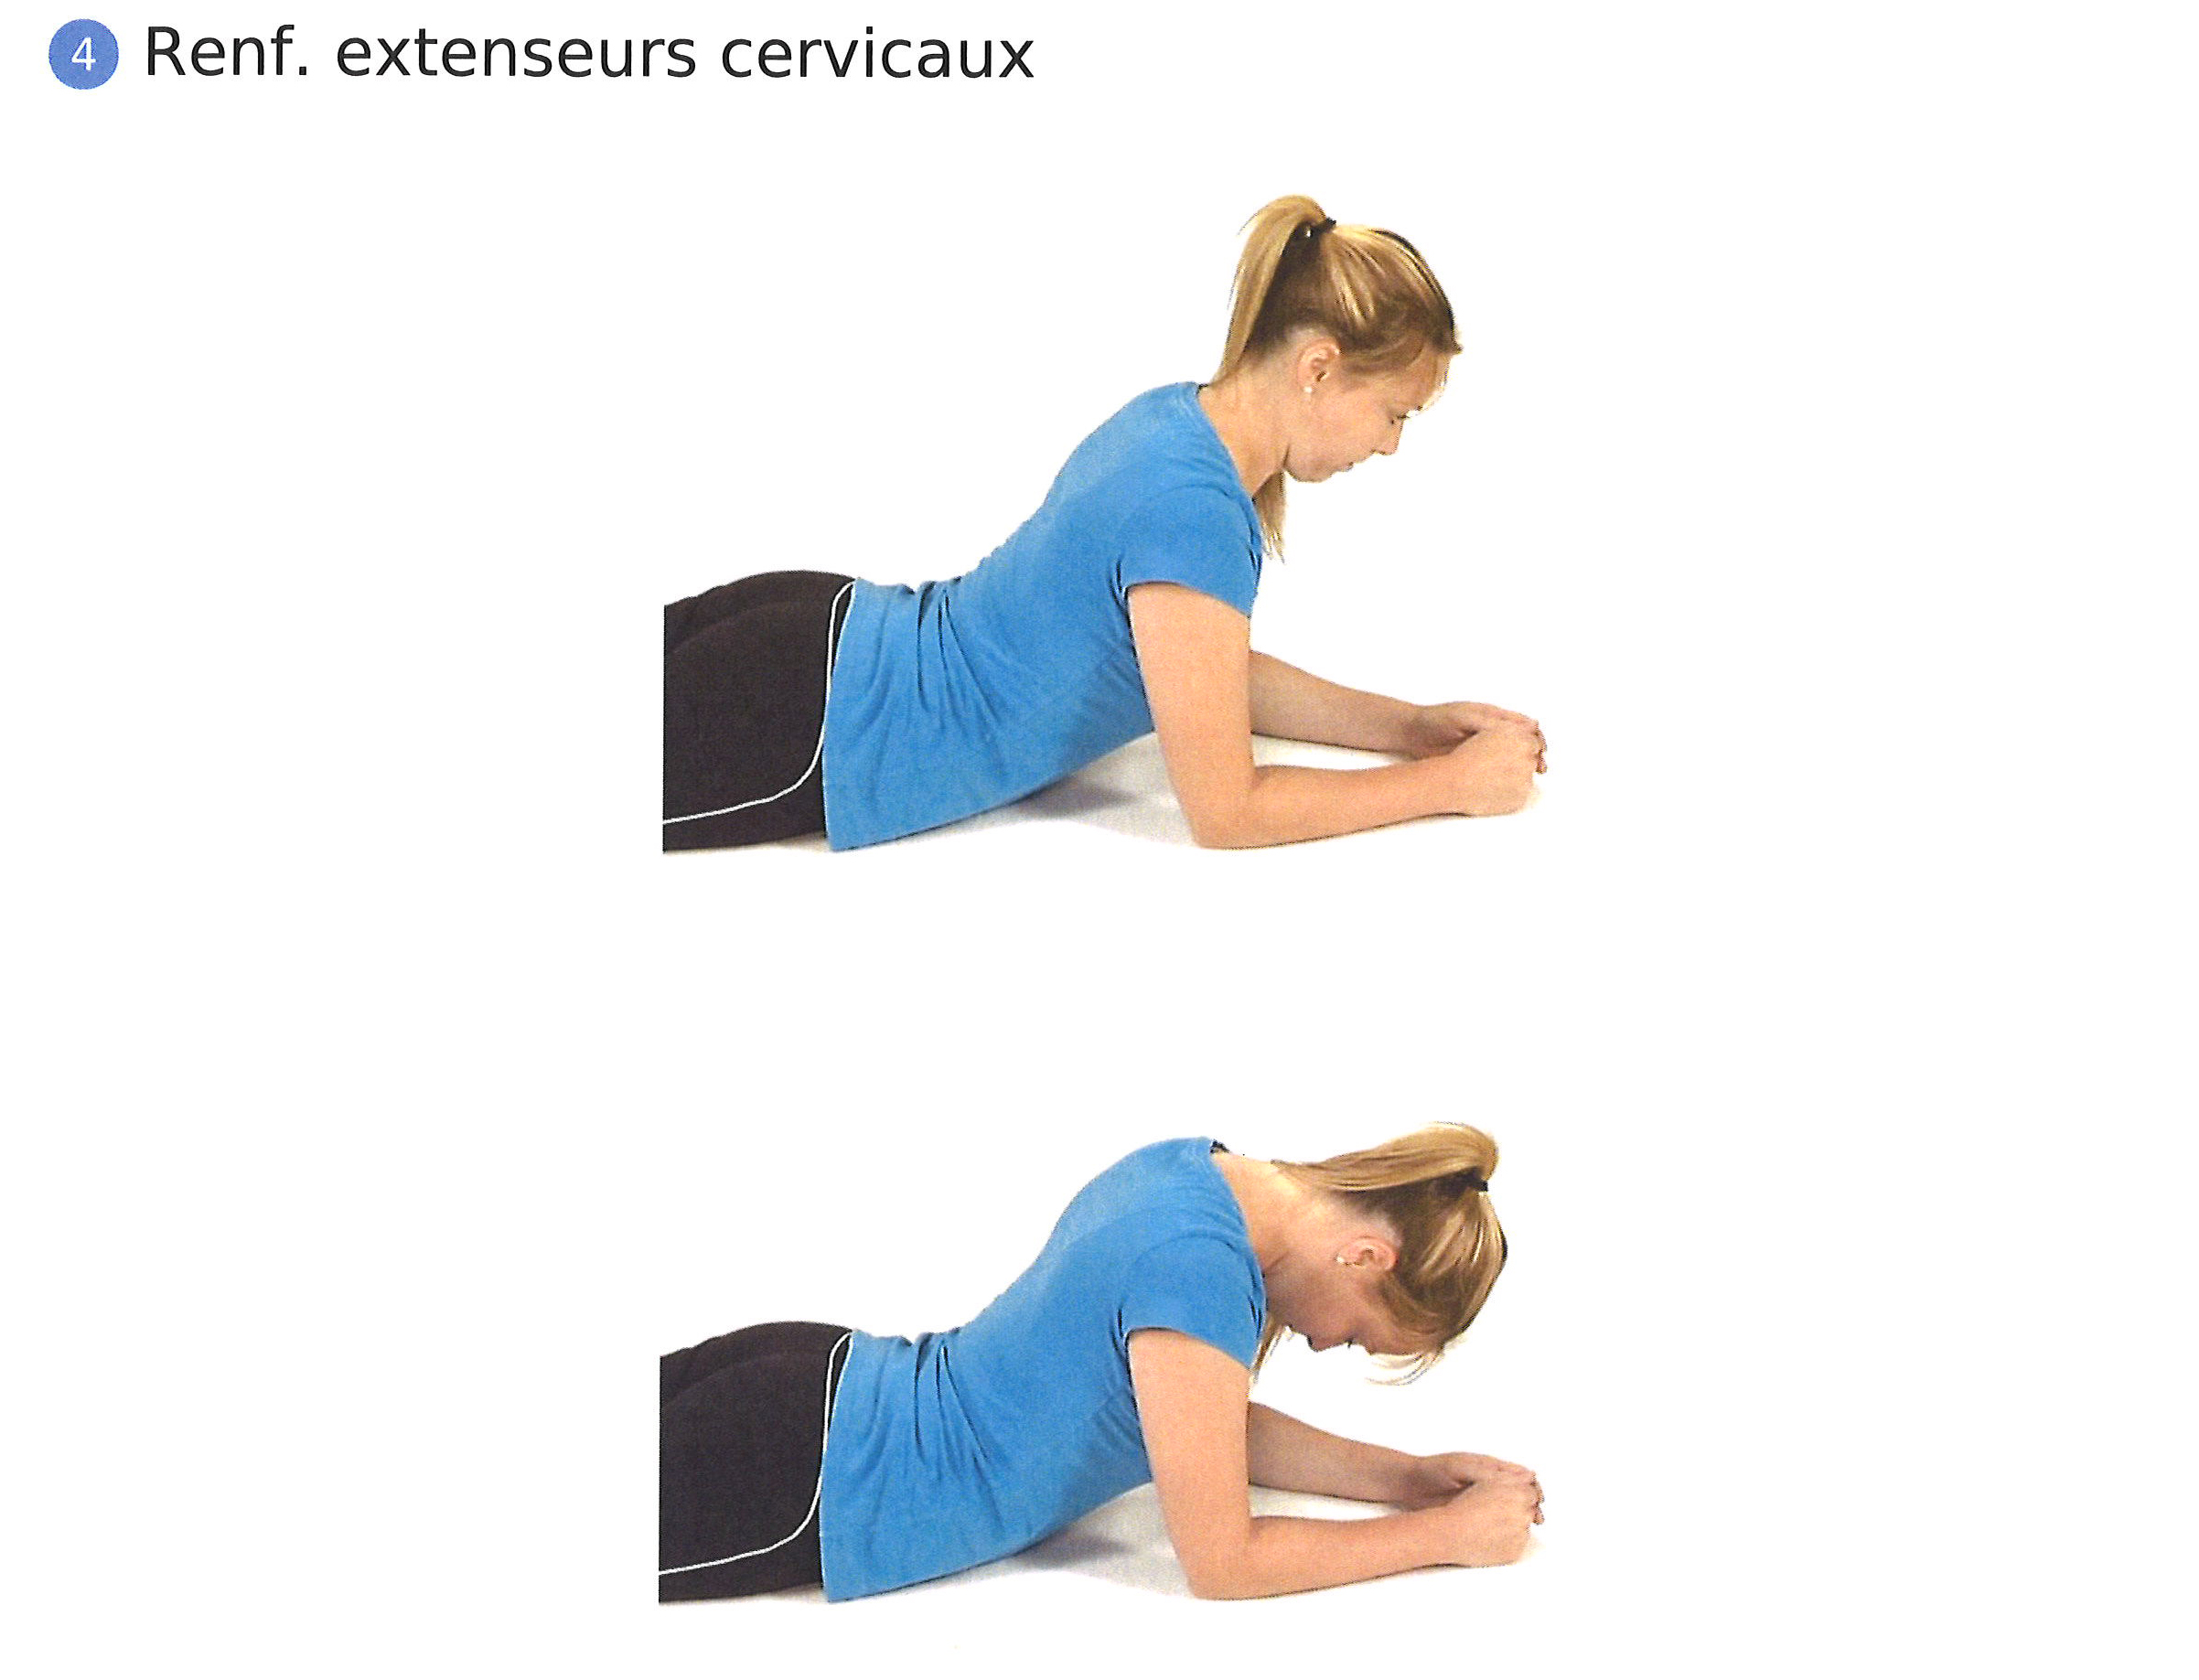 physio exercice hernie discale cervicale renforcement extenseurs cervicaux